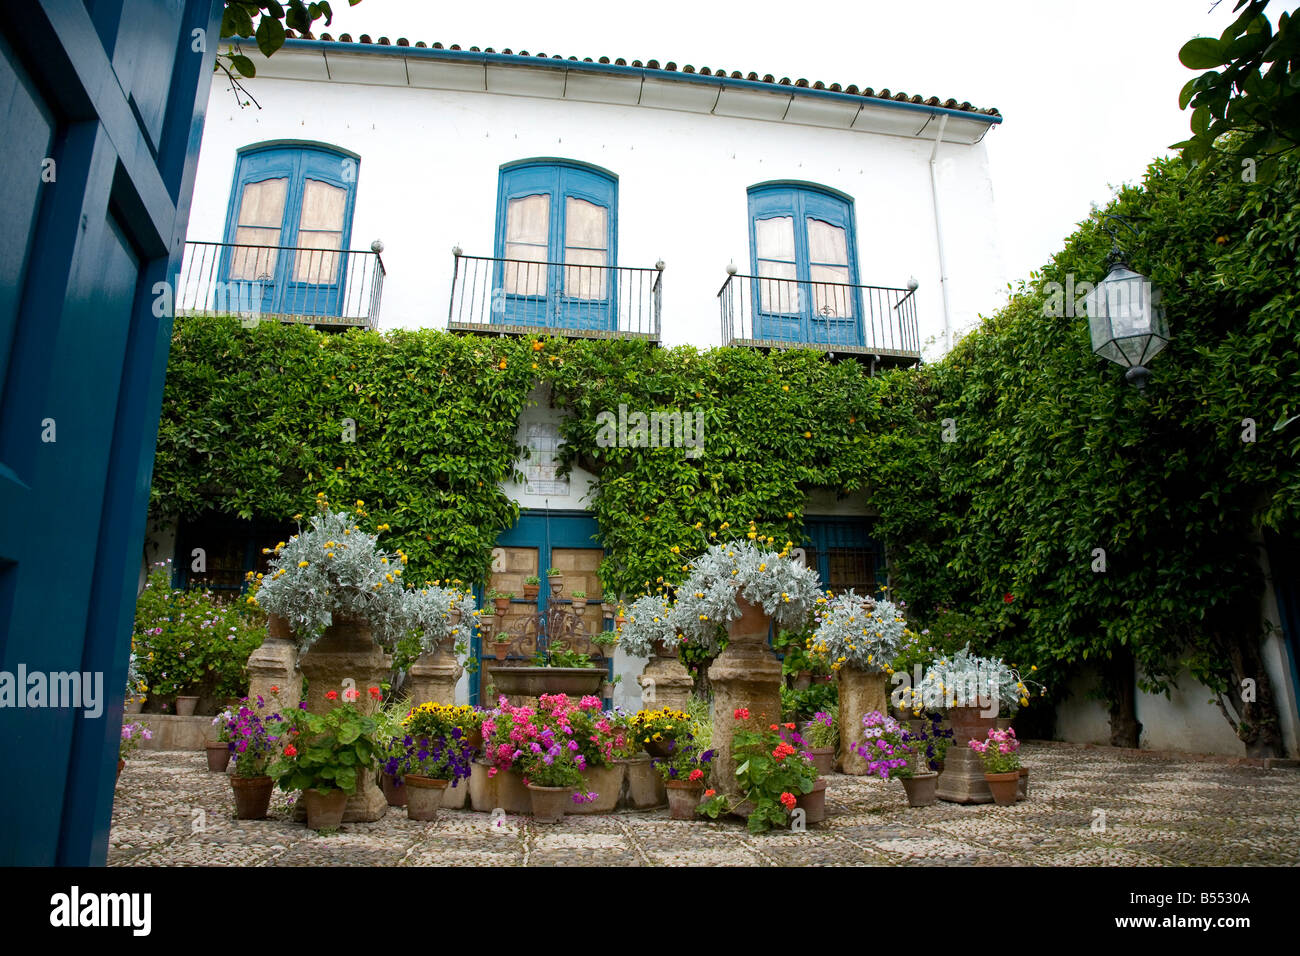 Blumentöpfe in einem mediterranen Innenhof Garten Teil des Festival der Patios, Cordoba Andalusien Spanien. El Concurso de Los Terrasse Stockfoto